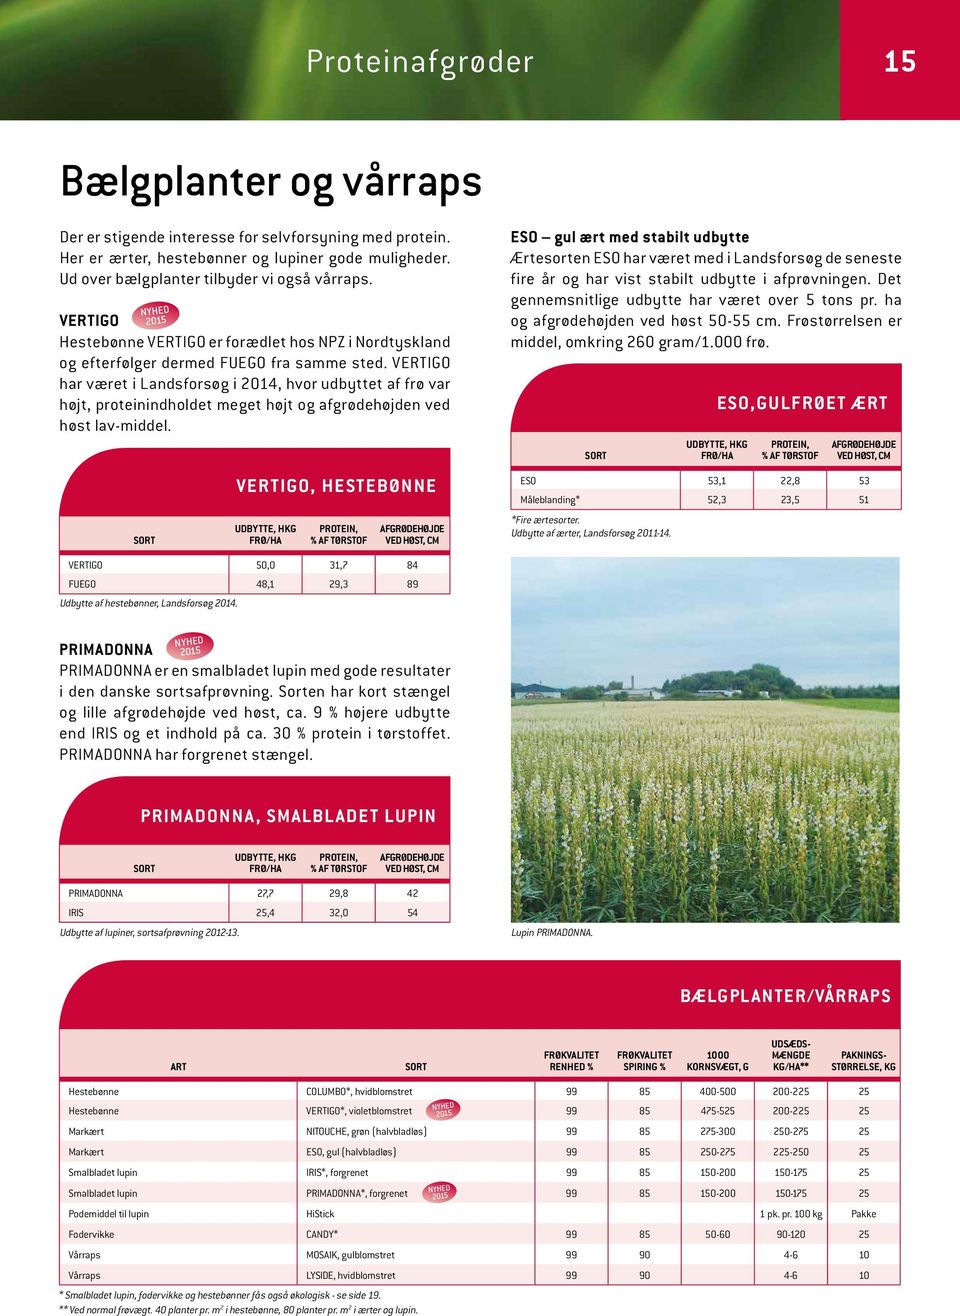 VERTIGO har været i Landsforsøg i 2014, hvor udbyttet af frø var højt, proteinindholdet meget højt og afgrødehøjden ved høst lav-middel.